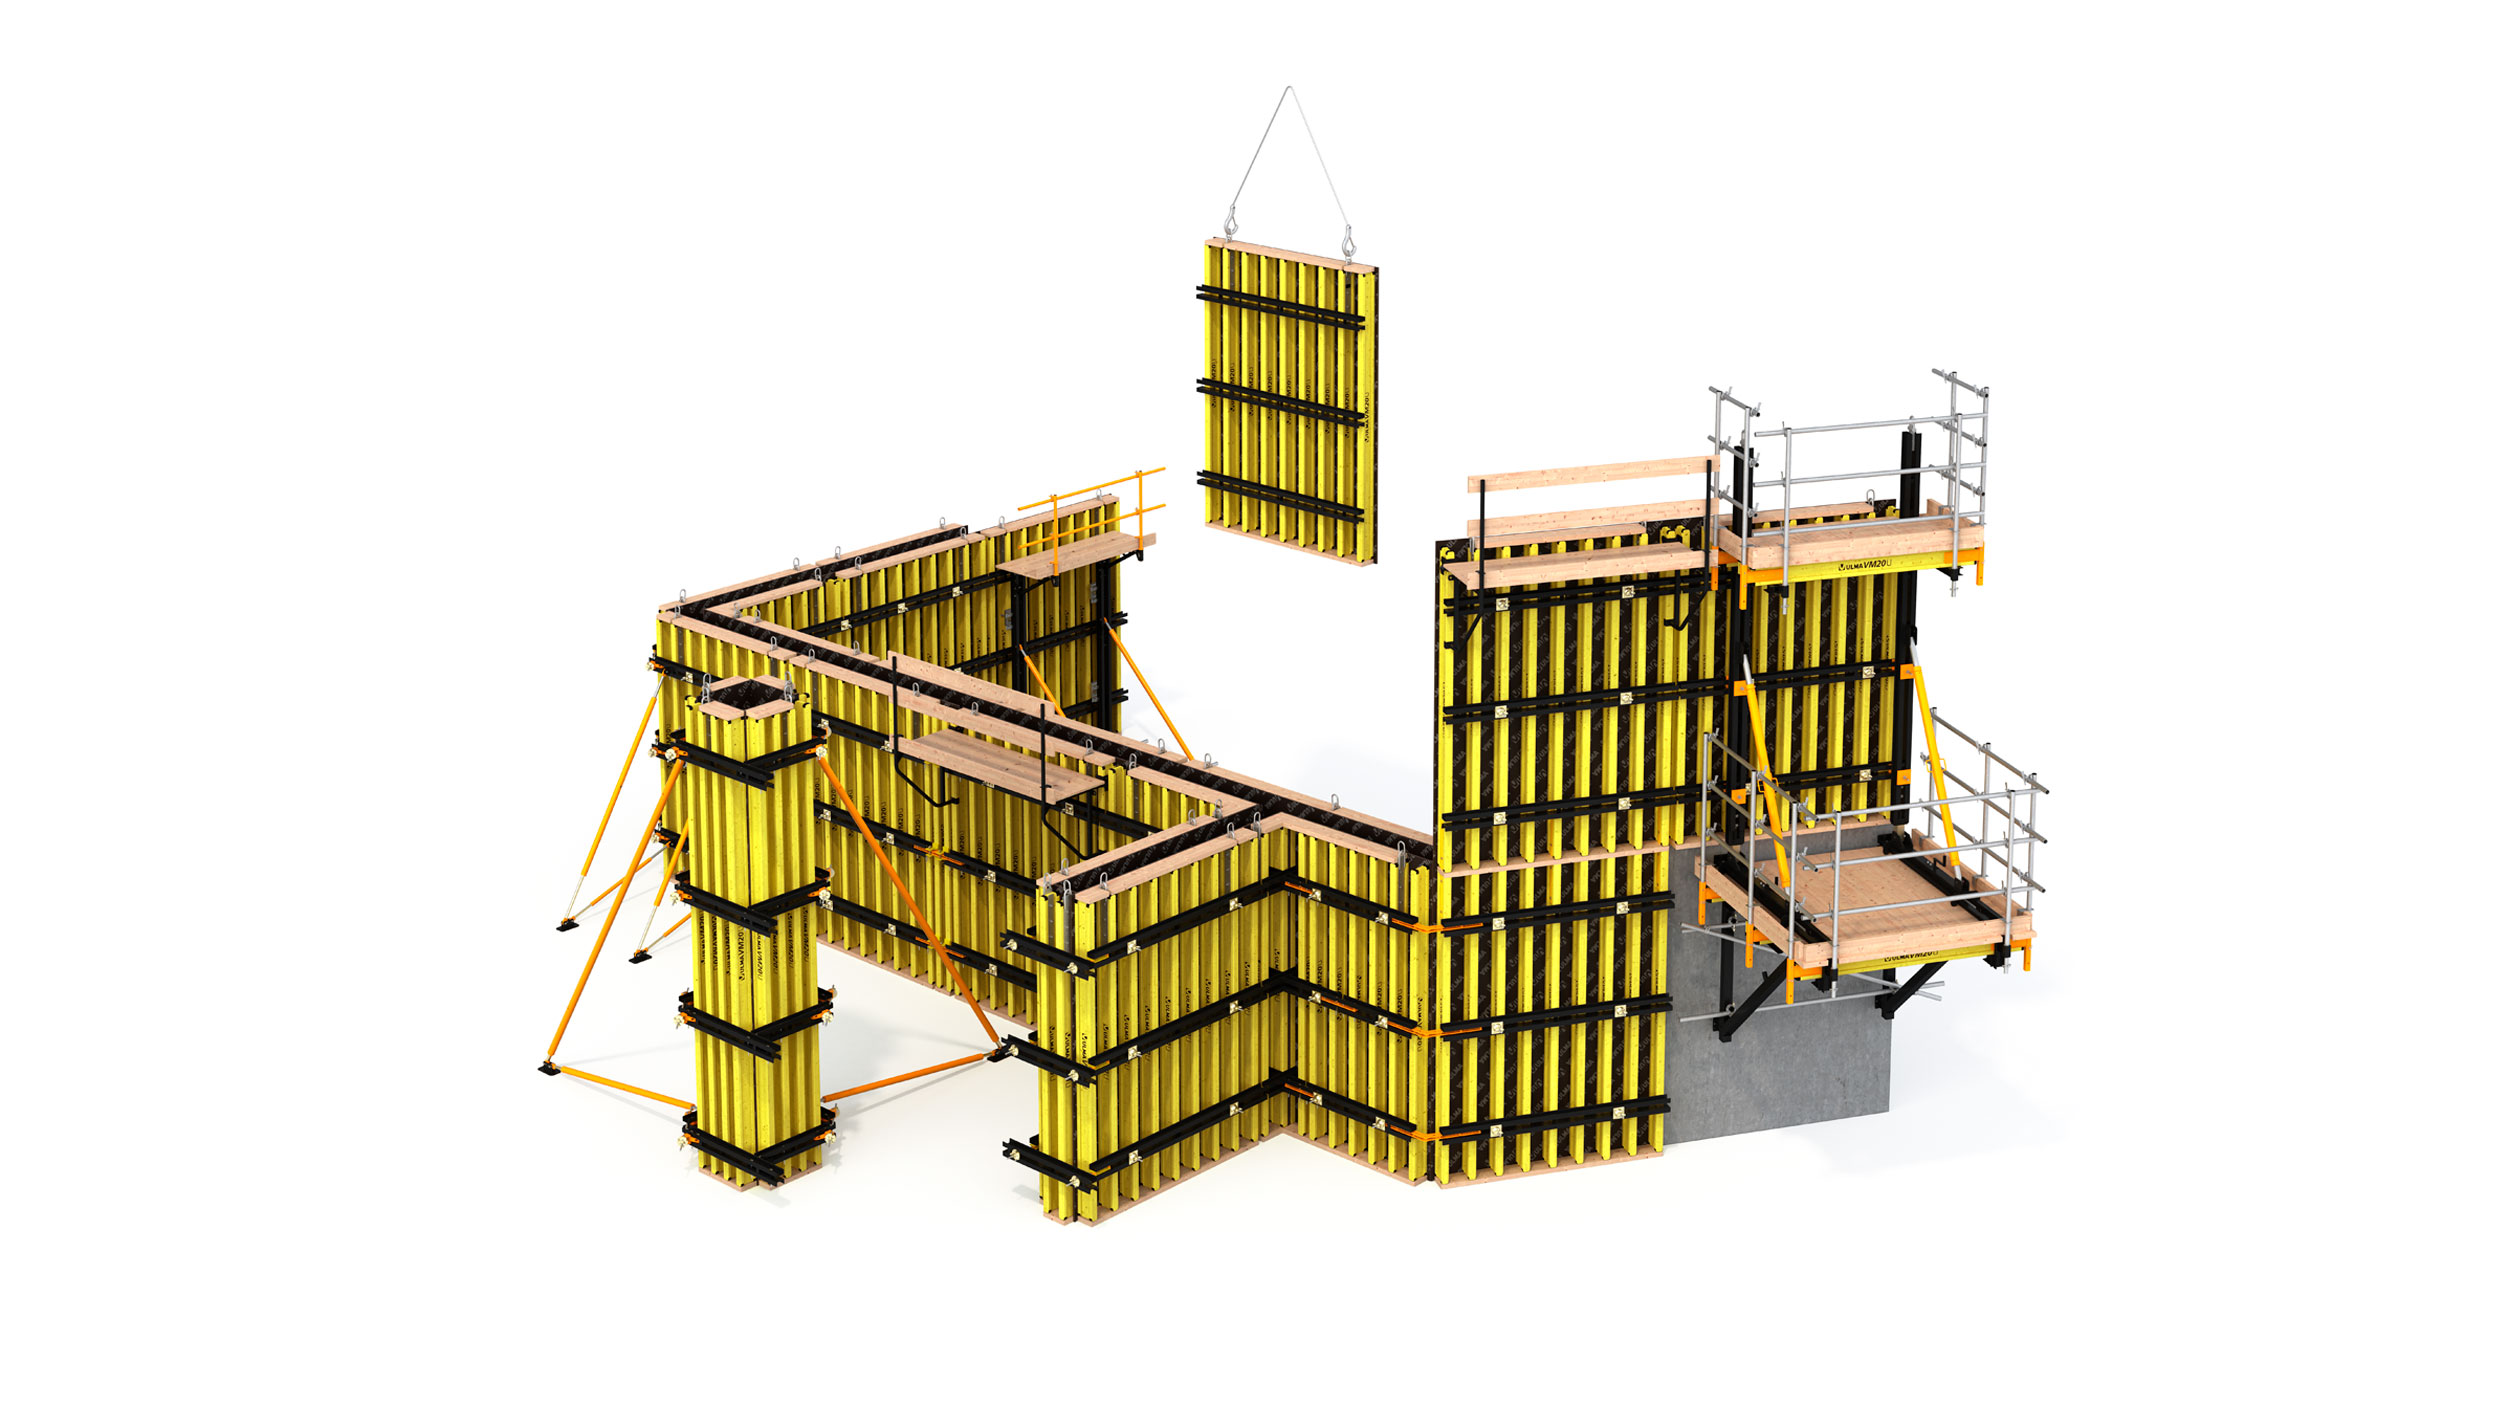 Máxima flexibilidad y adaptación a estructuras verticales en edificación y obra civil. Excelentes acabados de concreto.